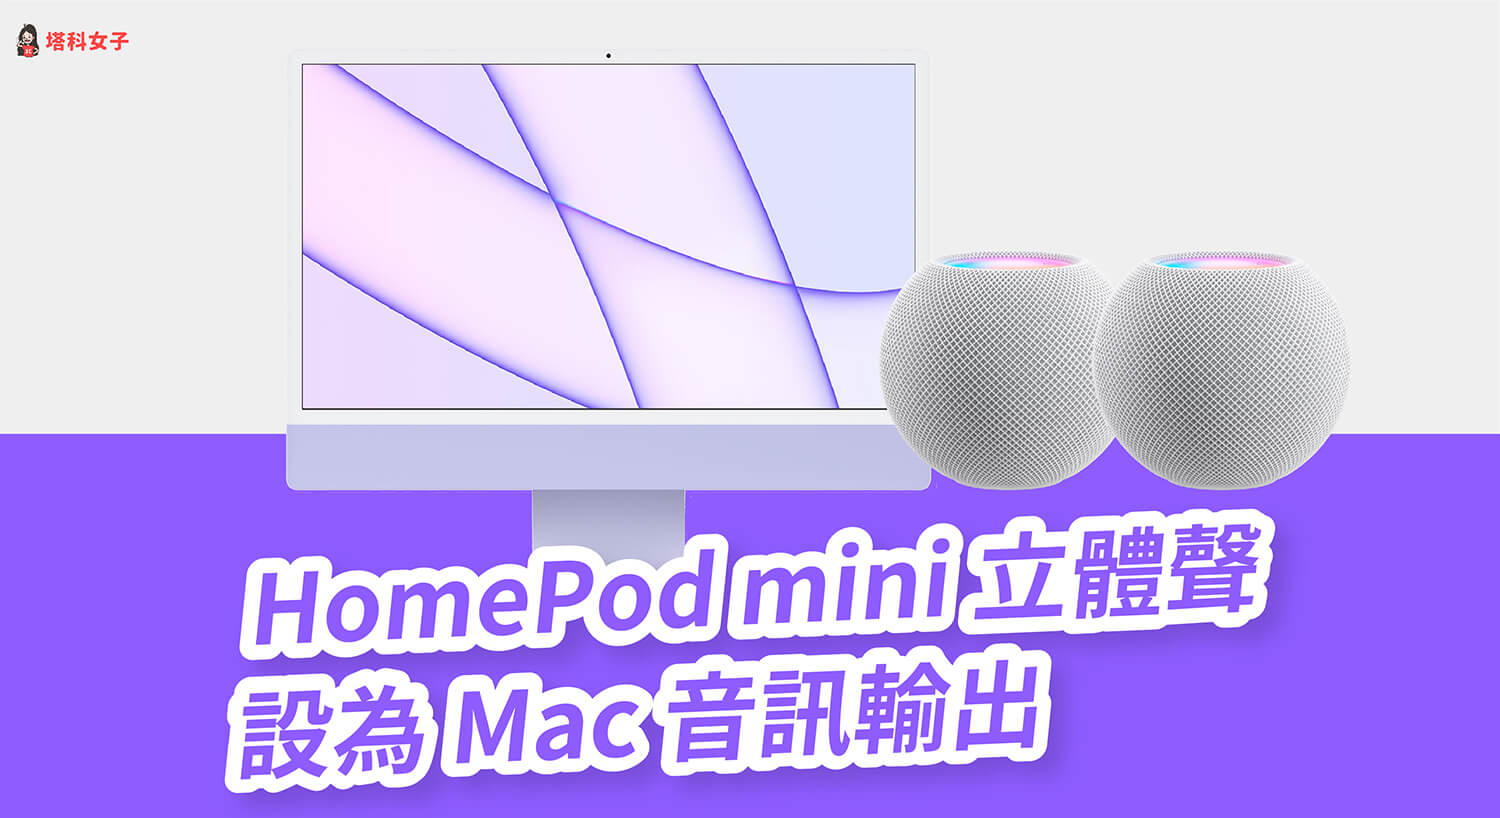 HomePod mini 立體聲如何與 Mac 配對連接？完整設定教學